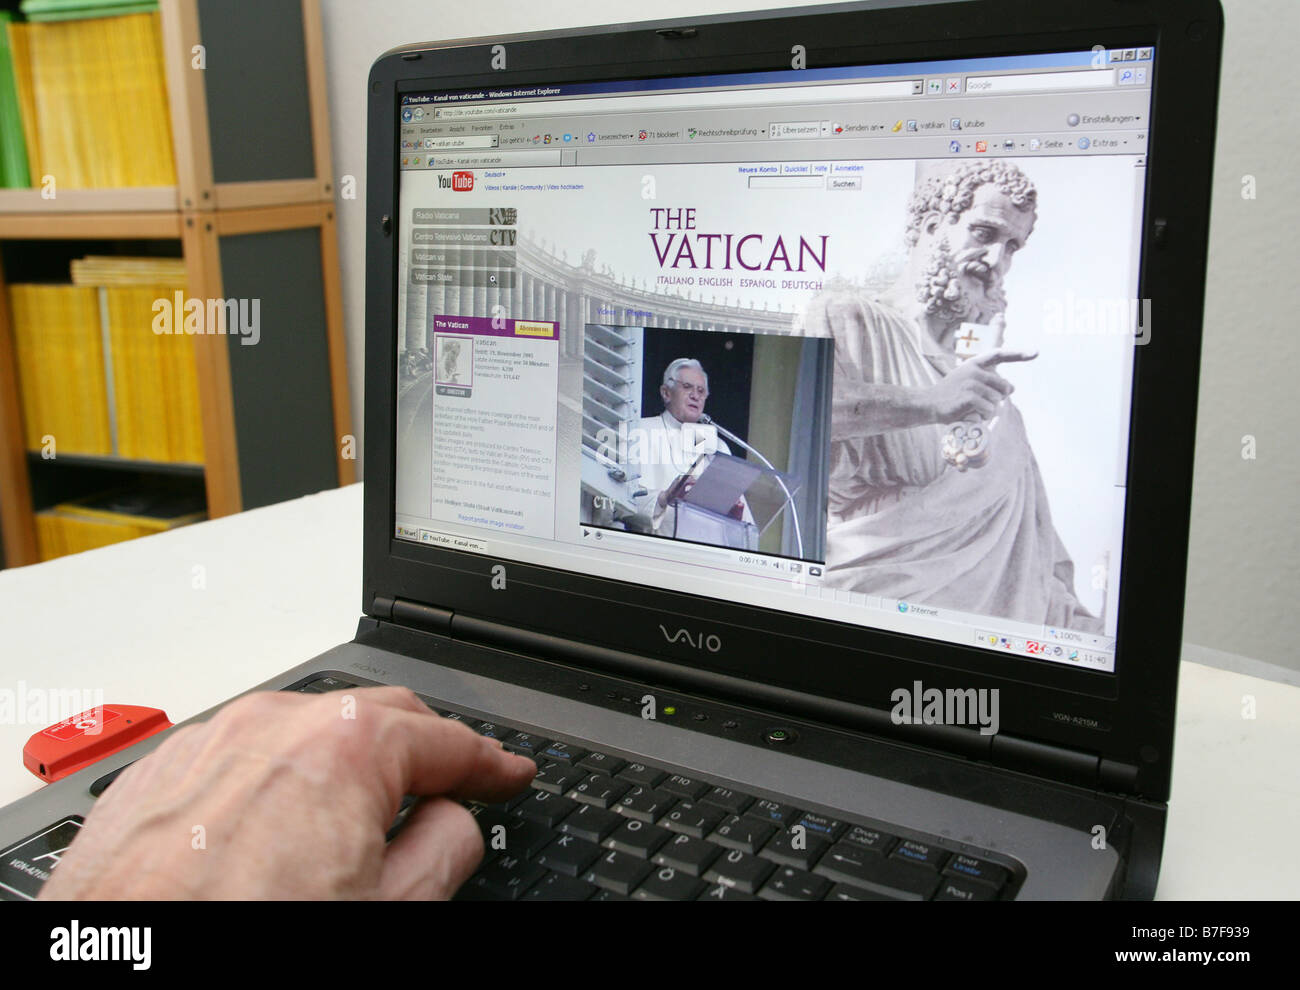 Capture d'écran de la plate-forme internet vaticans à youtube montre le Pape Benedikt XVI. Banque D'Images